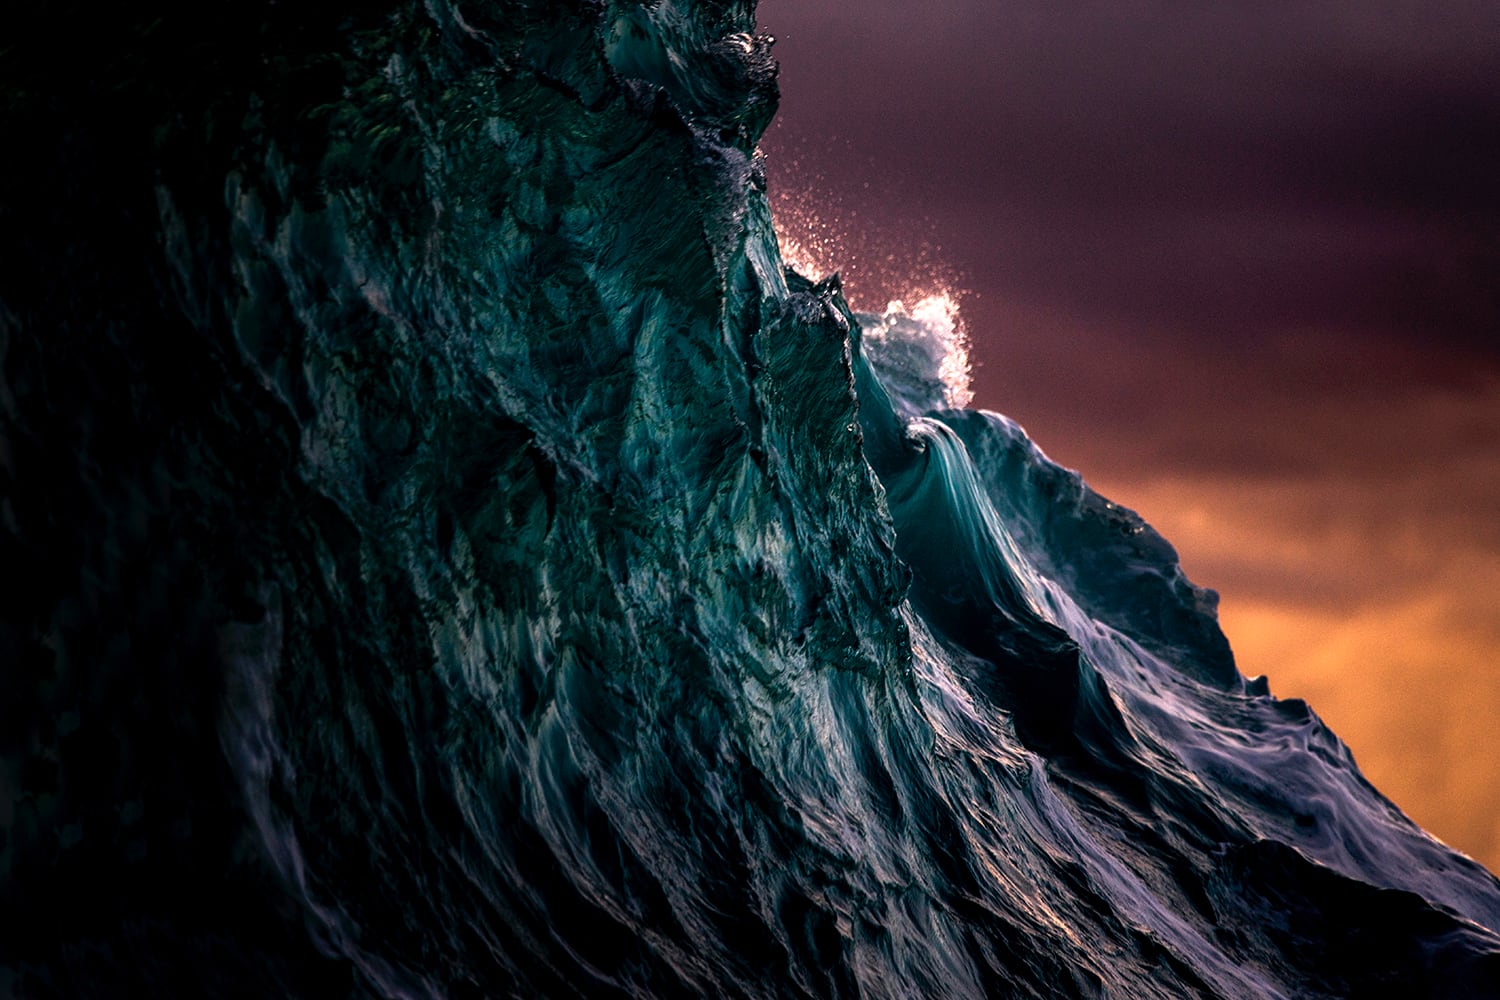 雷·柯林斯拍摄的爆炸性照片捕捉到了海洋爆发时反复无常的本质 - PSD素材网